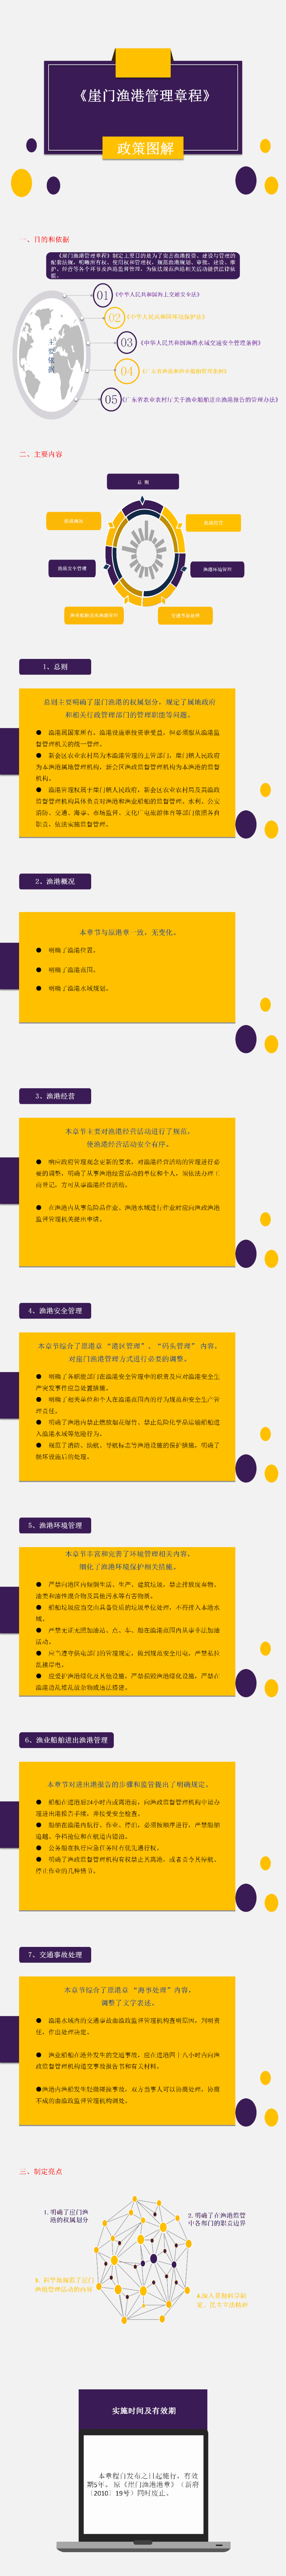 附件6：崖门渔港管理章程政策图解_01.png